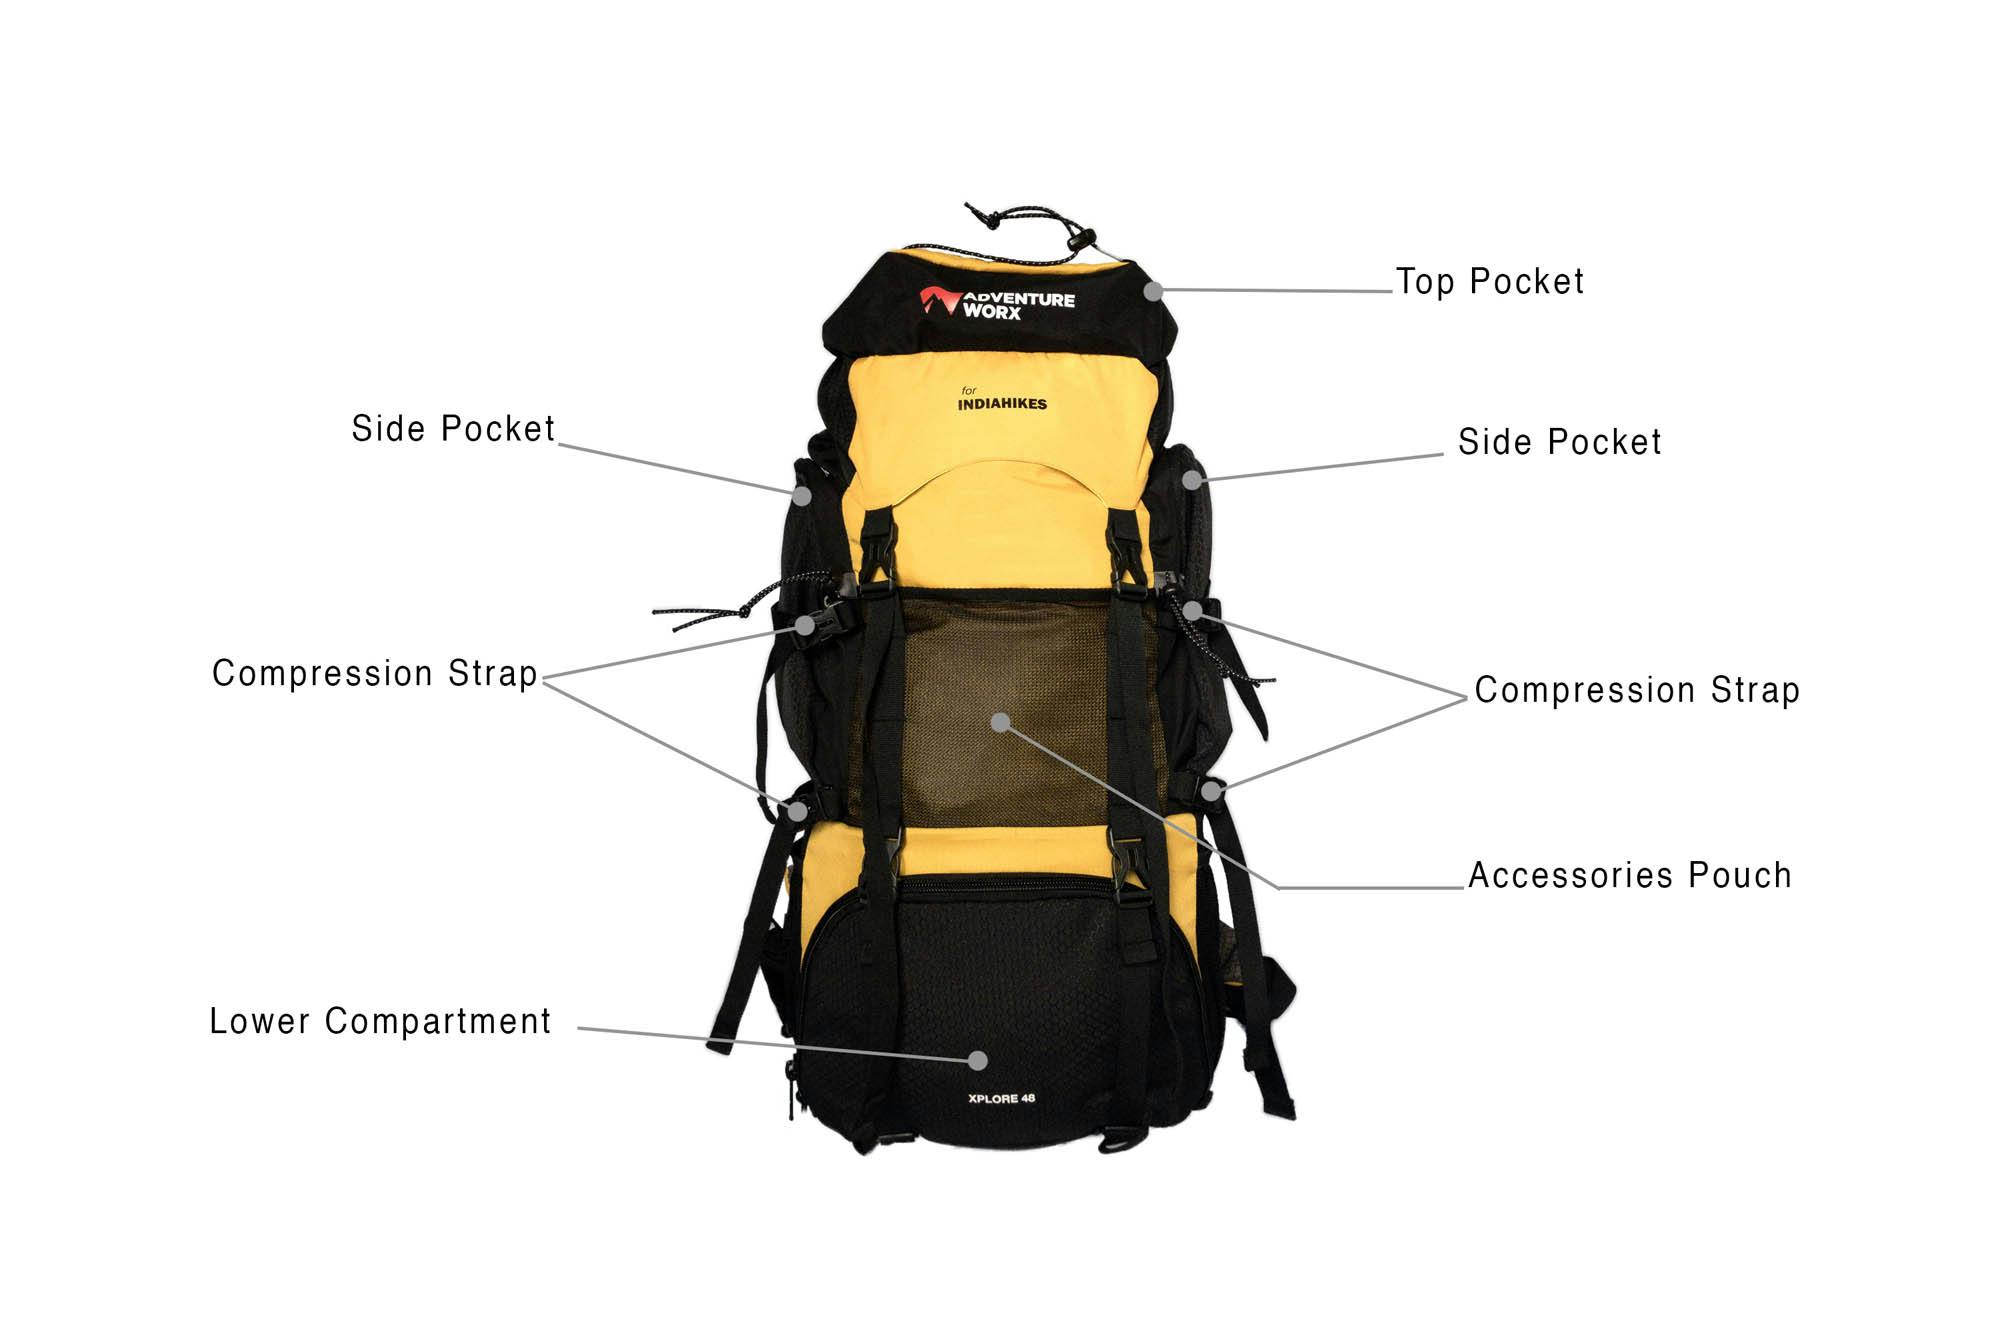 DIY Bag Parts Accessories Strap Bags Shoulder Bag Wide Backpack